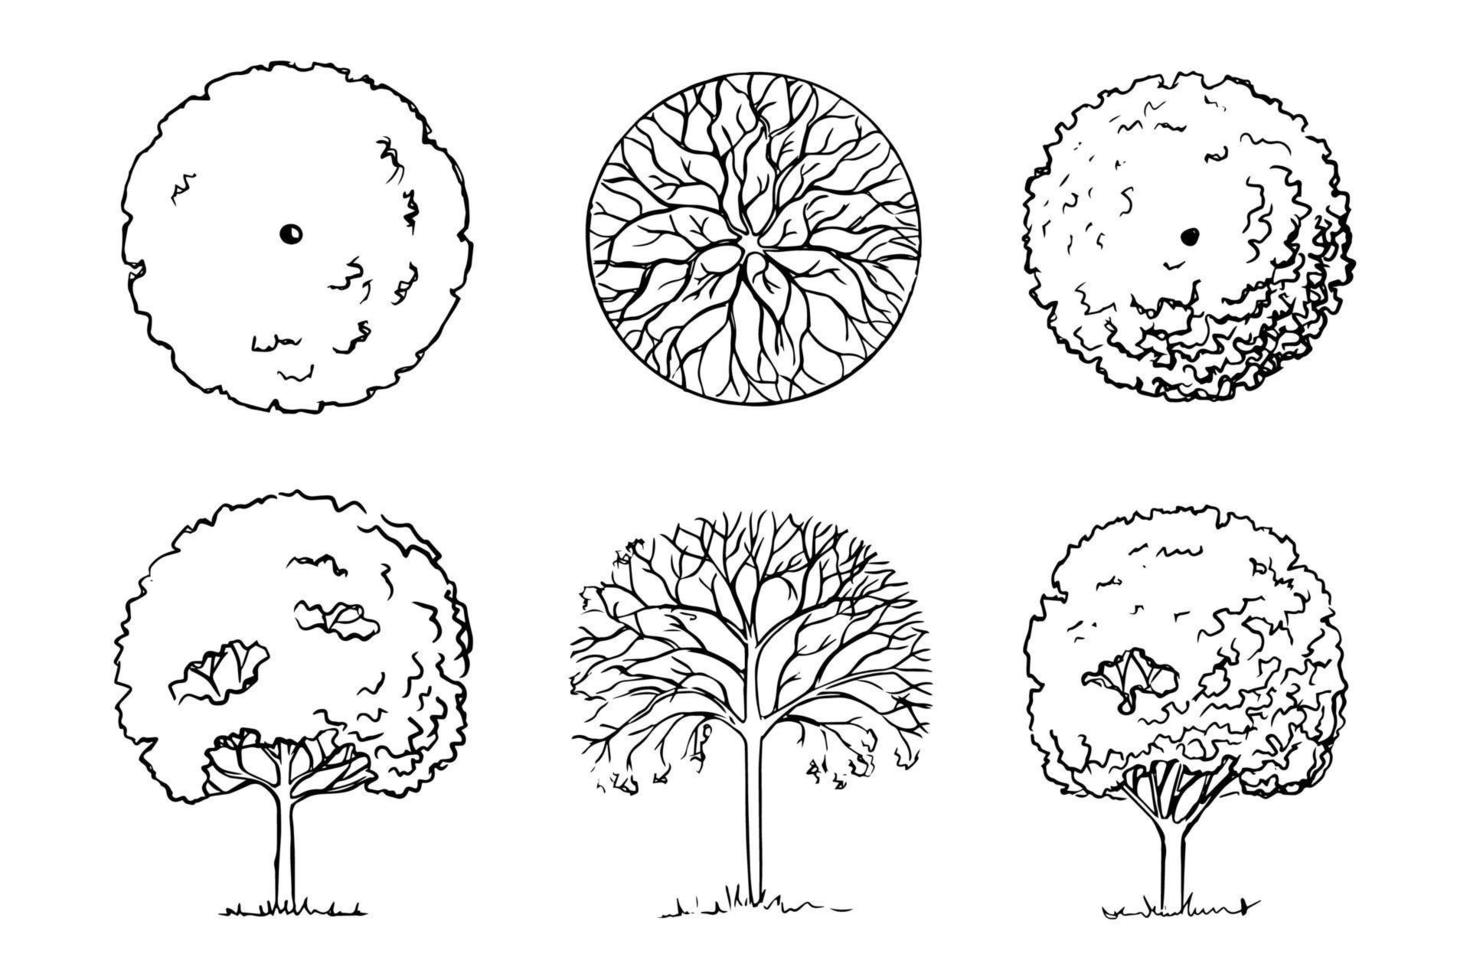 handgetekende schets van bomen. landschapsarchitectuur. drie bladverliezende tuin houtachtige planten vooraanzicht en bovenaanzicht. zwart-wit graphics.ile vector